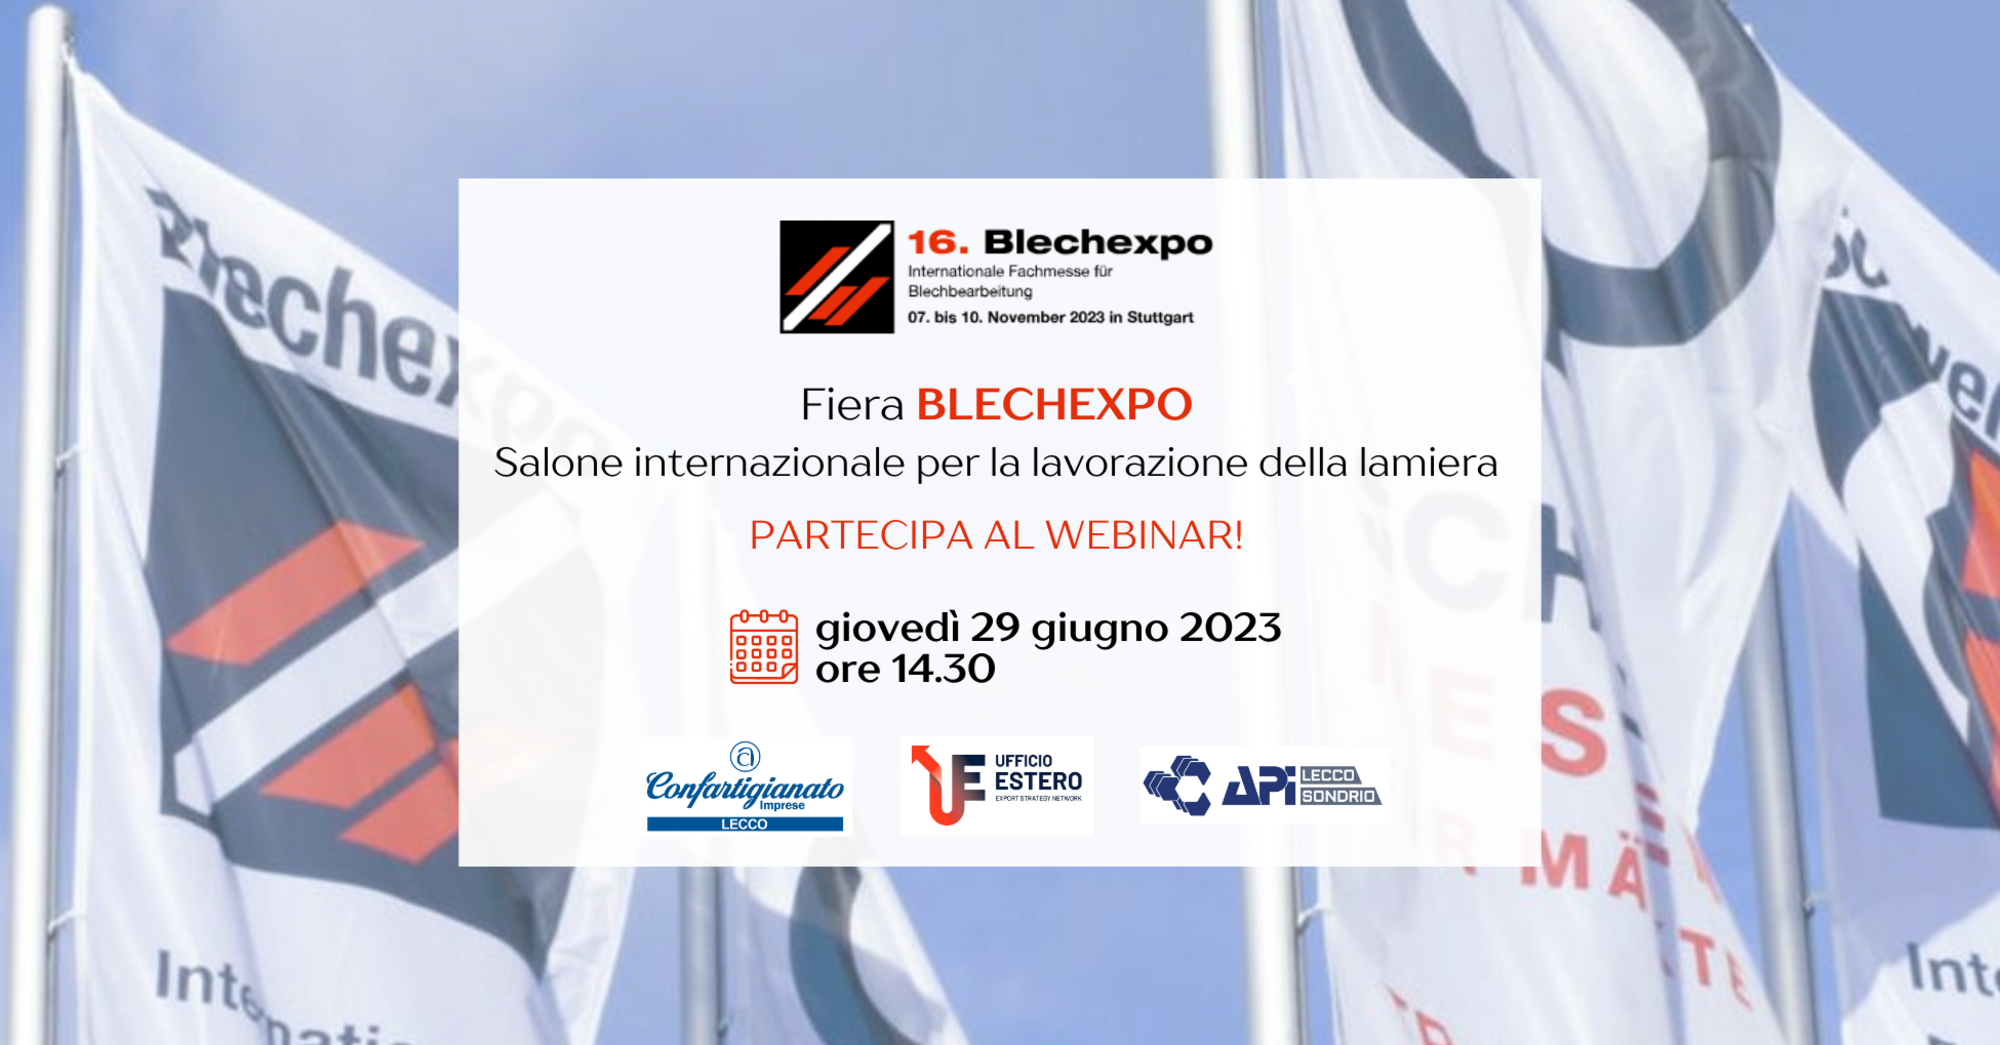 Visit to Blechexpo trade show - Webinar